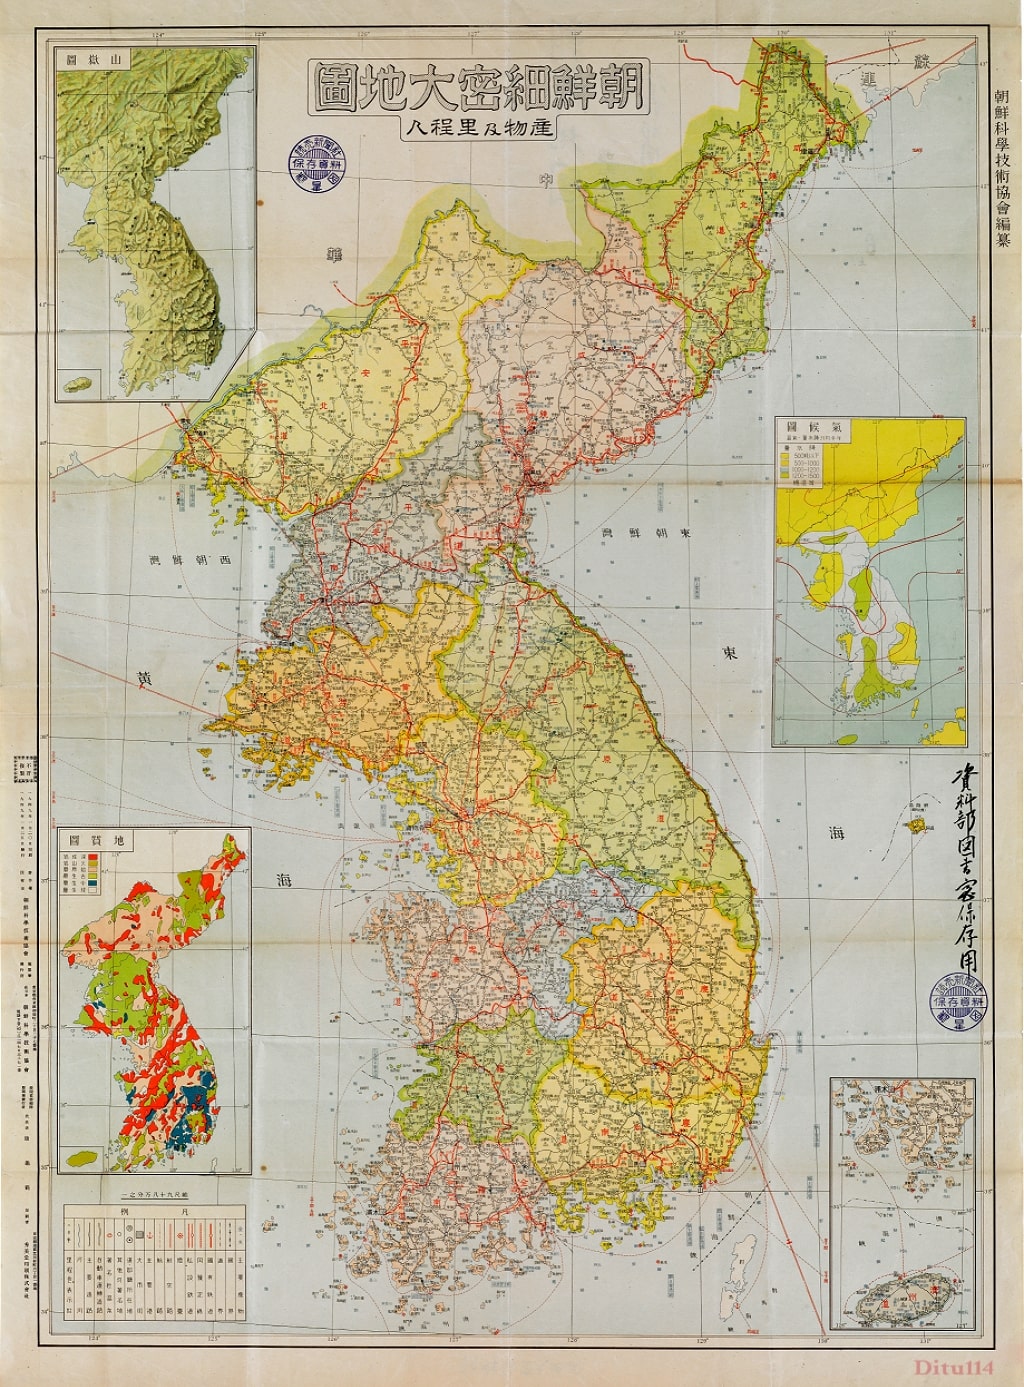 1949朝鲜细密大地图.jpg